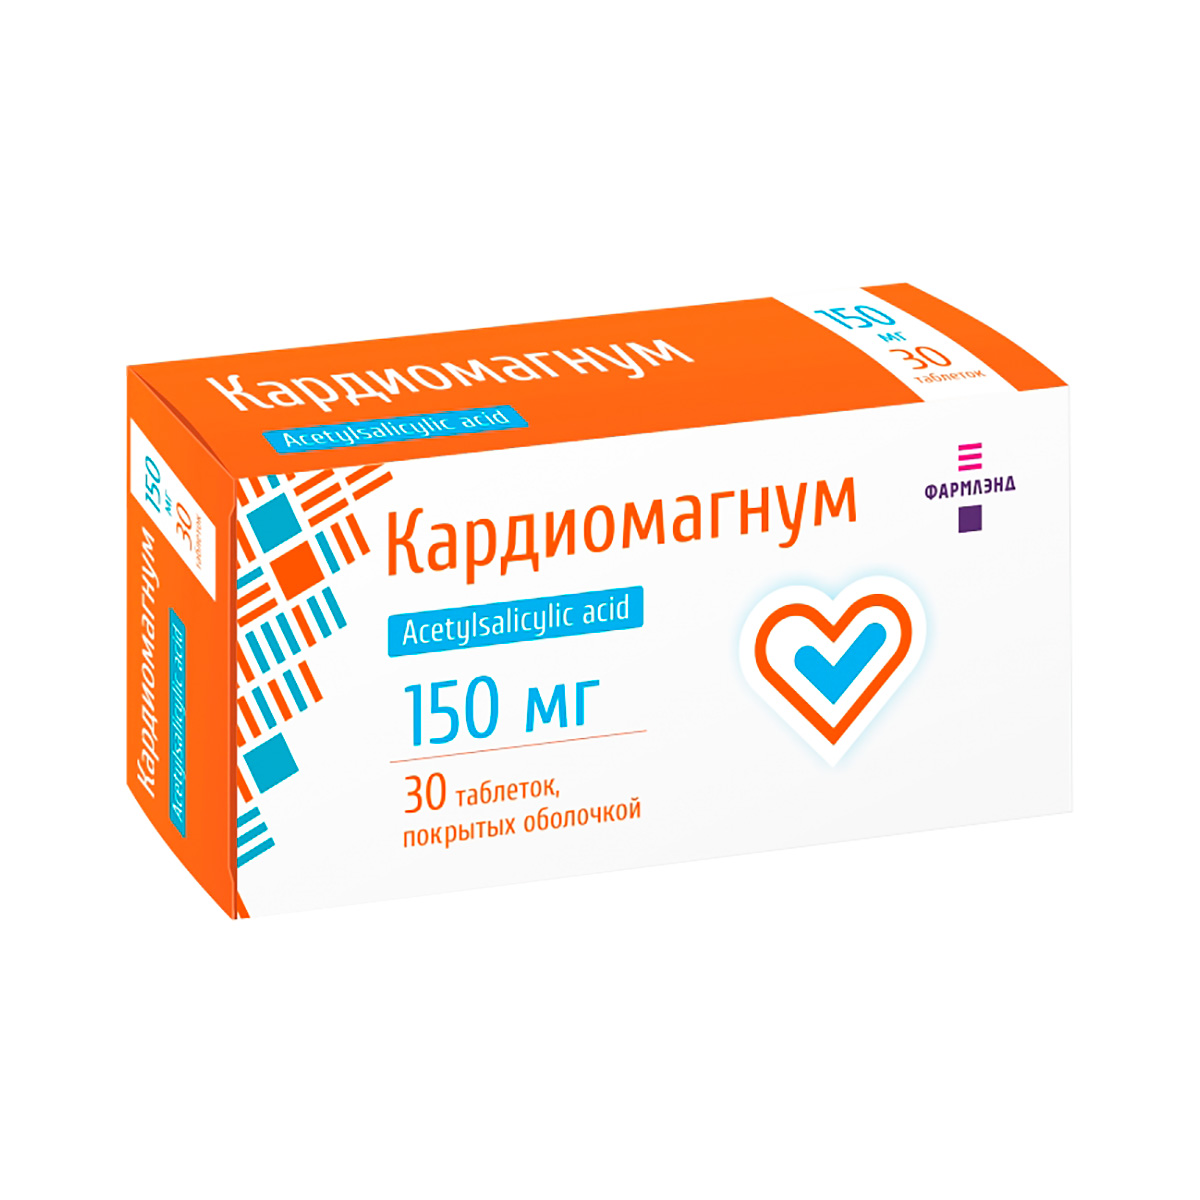 Кардиомагнум 150 мг таблетки покрытые оболочкой 30 шт